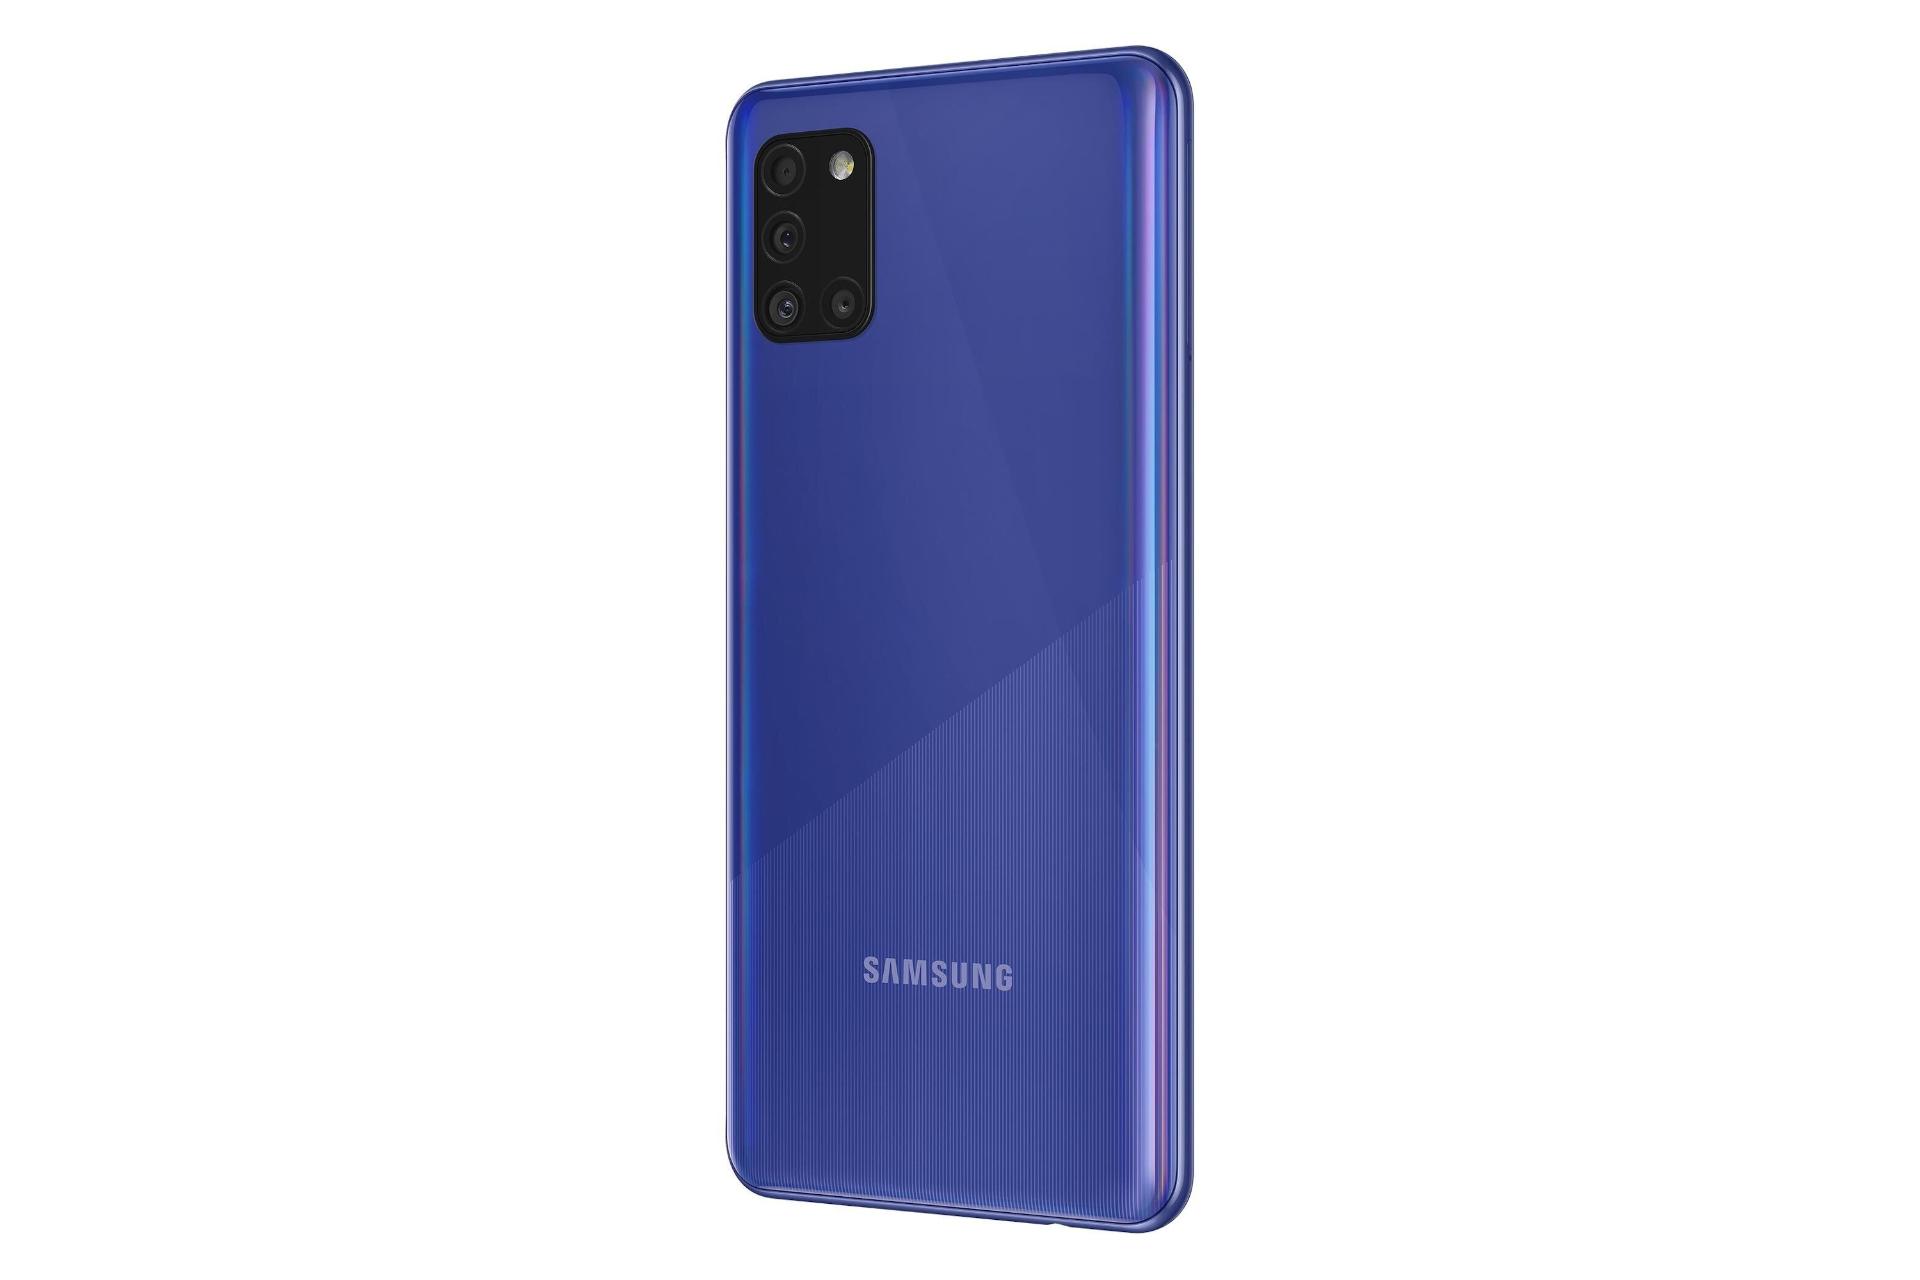 نمای راست گوشی موبایل گلکسی A31 سامسونگ Samsung Galaxy A31 آبی